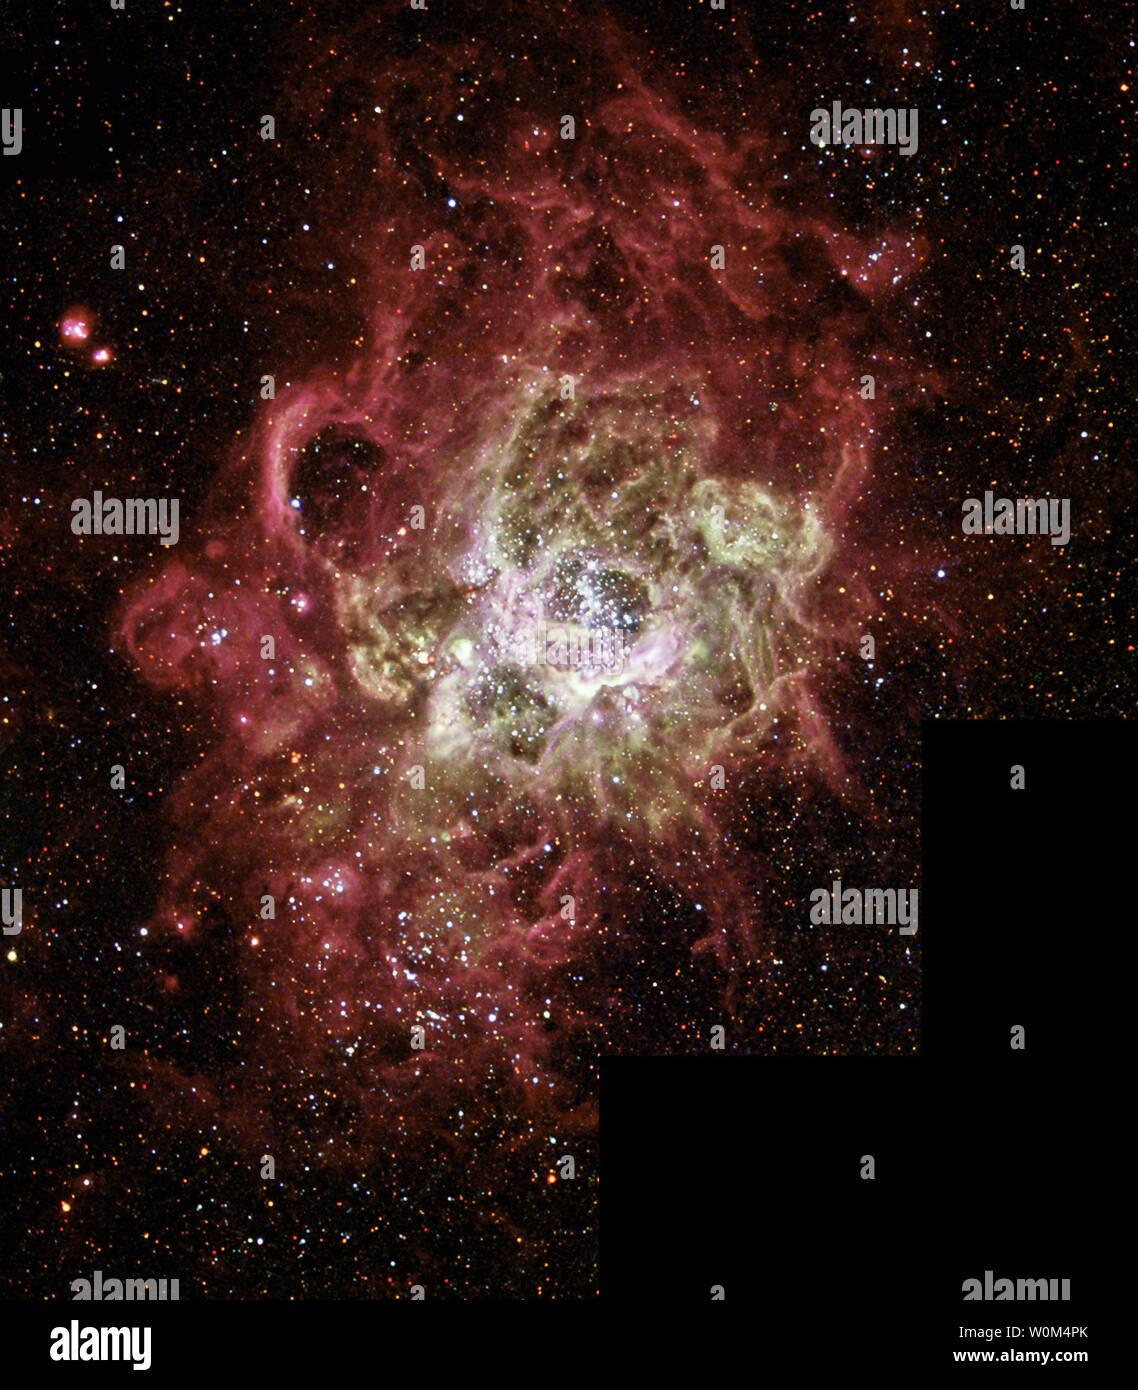 Diesem festlich bunten Nebel, NGC 604, ist eine der größten bekannten brodelnden Kessel von Star Geburt in einem nahen Galaxie gesehen. NGC 604 ist ähnlich wie bei bekannten Star - Geburt Regionen in unserer Milchstraße, wie dem Orionnebel, aber es ist stark im Umfang größer und enthält viele weitere vor kurzem gebildeten Sterne. Dieses monströse Star - Geburt Region enthält mehr als 200 leuchtend blaue Sterne innerhalb einer Wolke aus glühenden Gasen rund 1.300 Lichtjahre über, fast 100 Mal so groß wie der Orionnebel. Image Veröffentlicht Dezember 2003. (UPI Foto/NASA/Hubble) Stockfoto